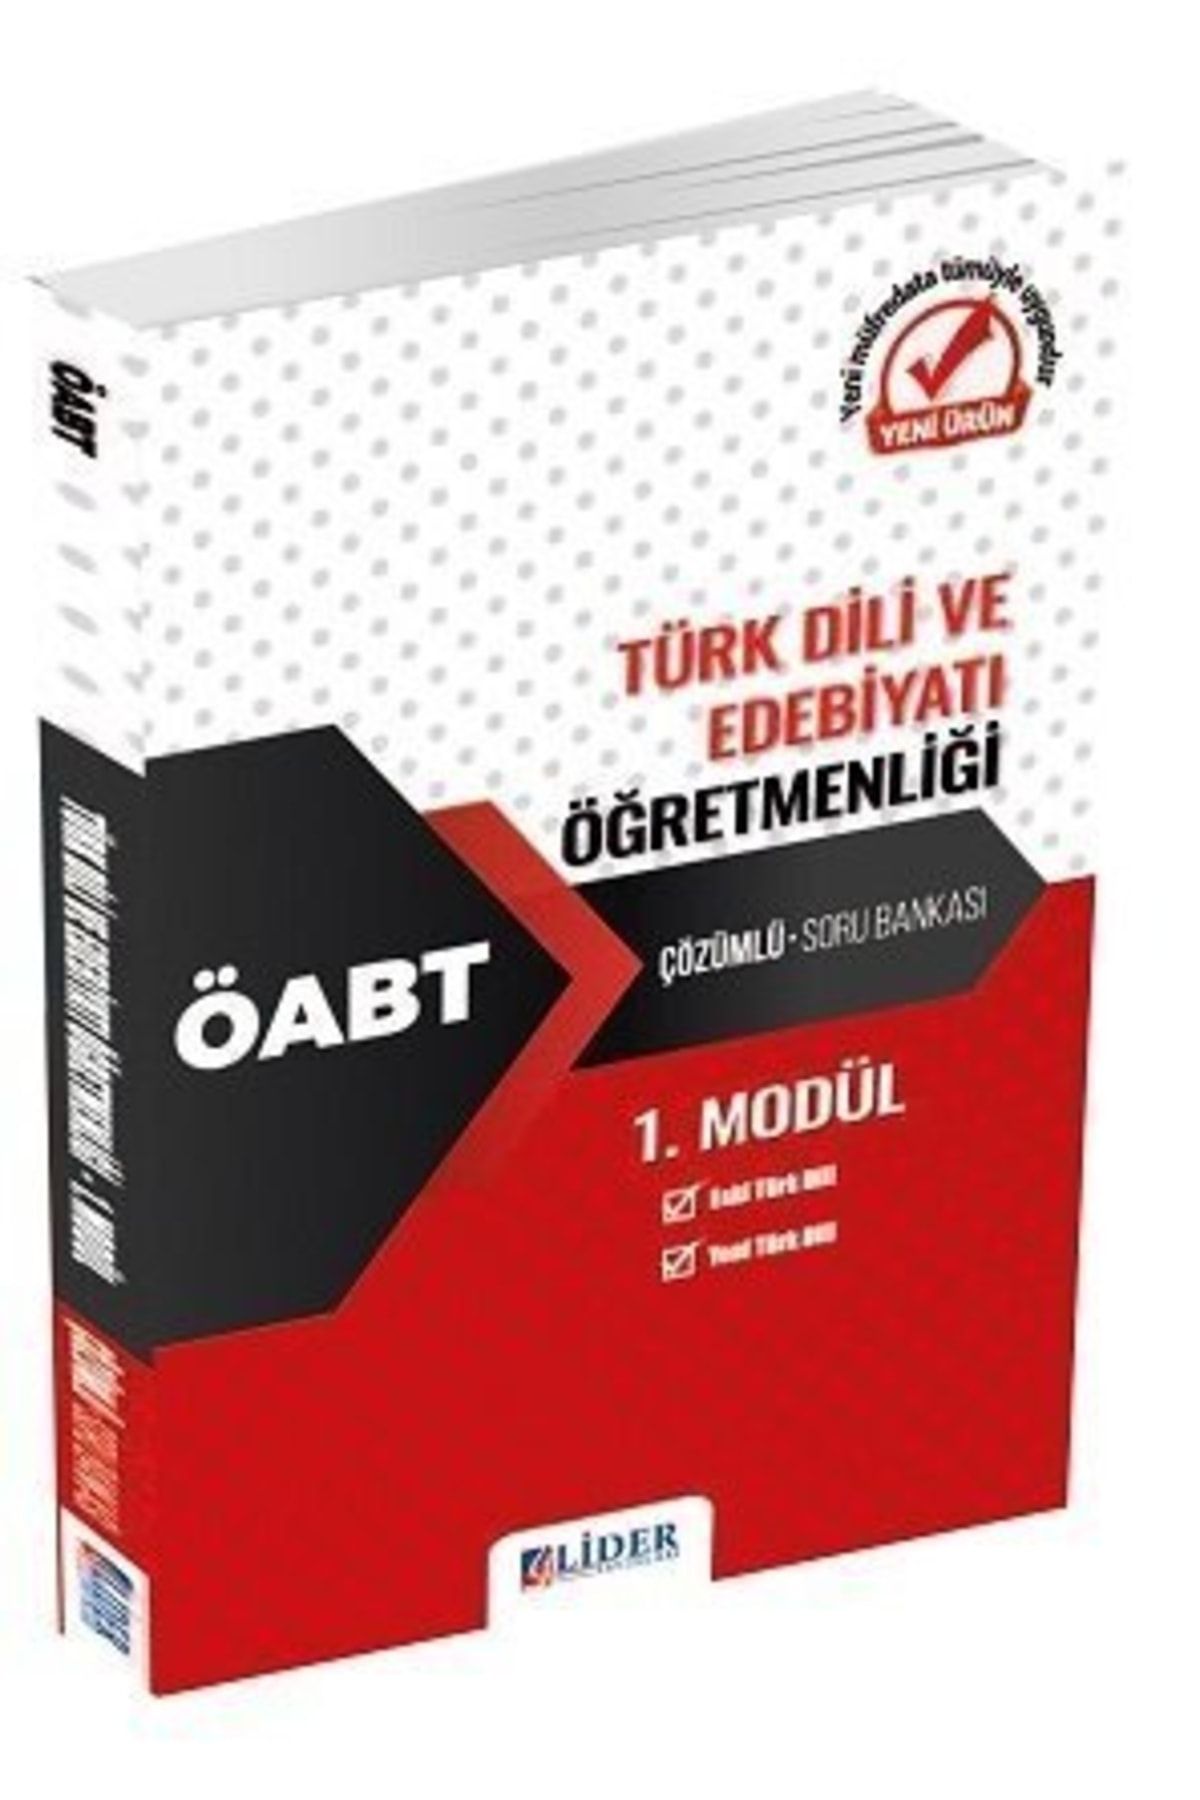 Lider Yayınları 2020 Öabt Türk Dili ve Edebiyatı Öğretmenliği 3lü Modüler Çözümlü Soru Bankası